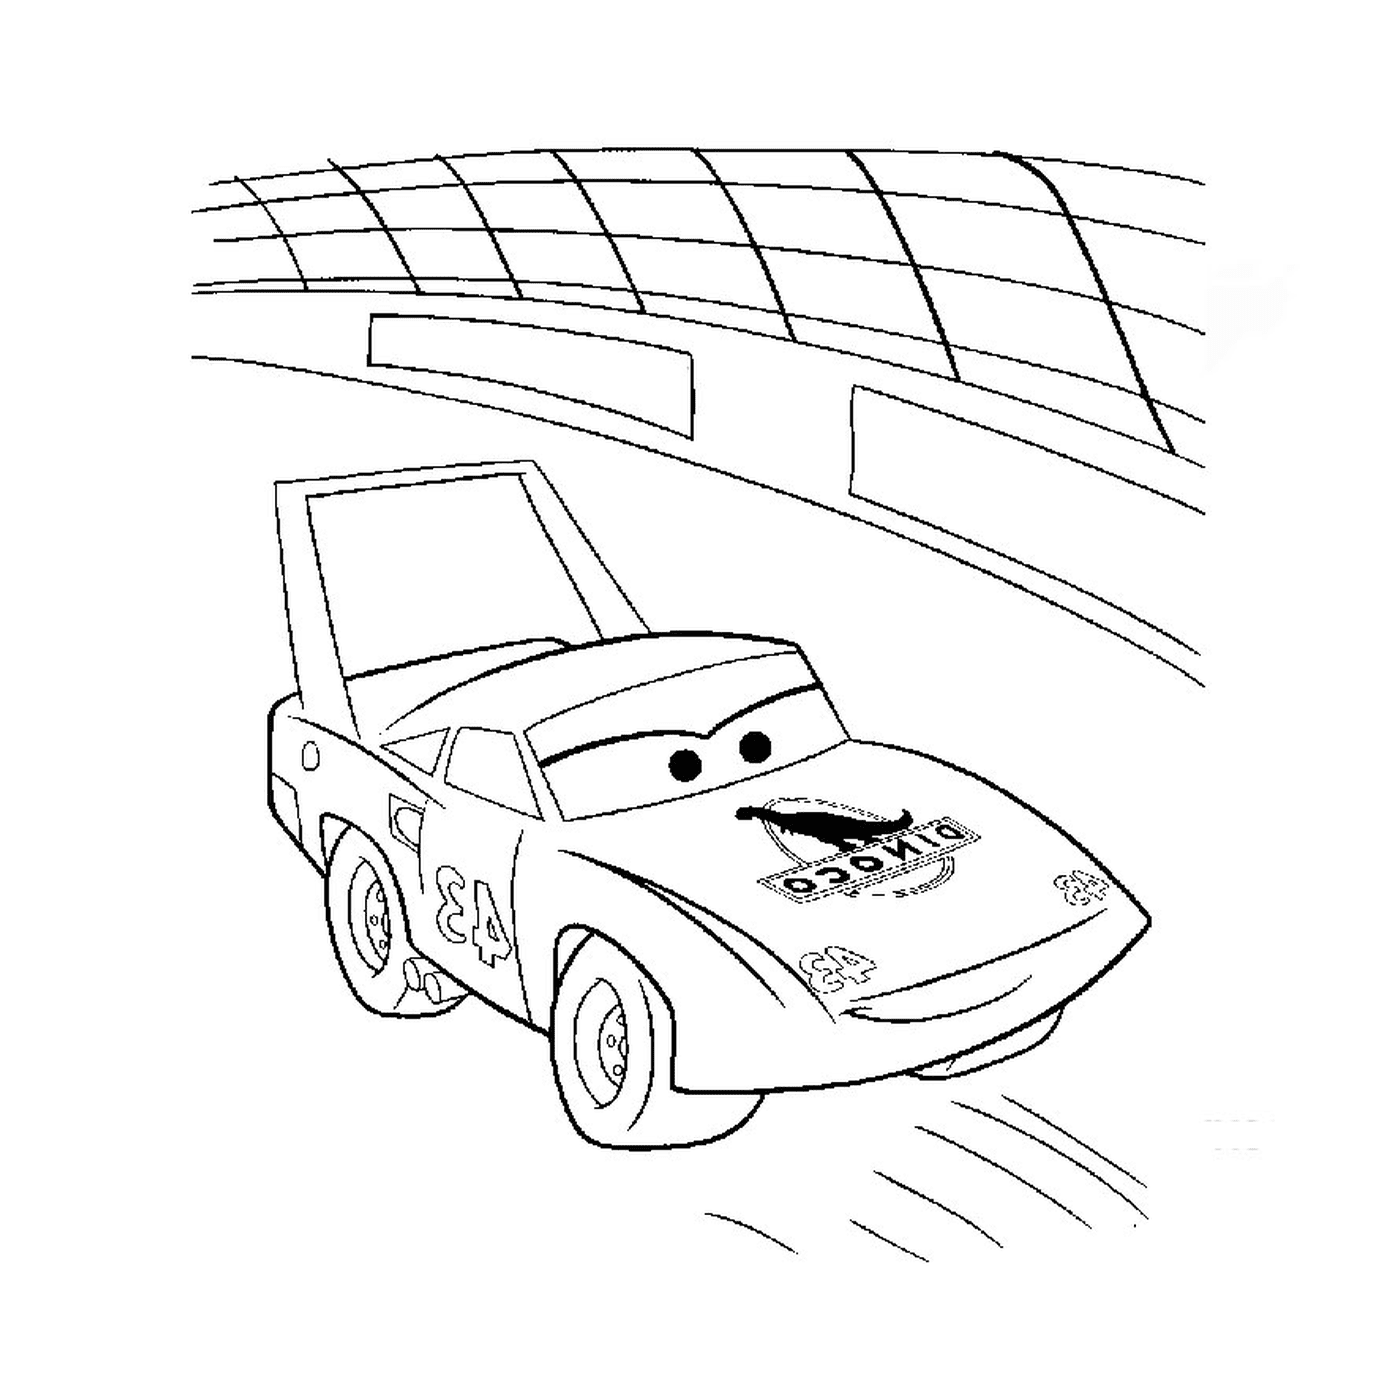  A car on a race track 